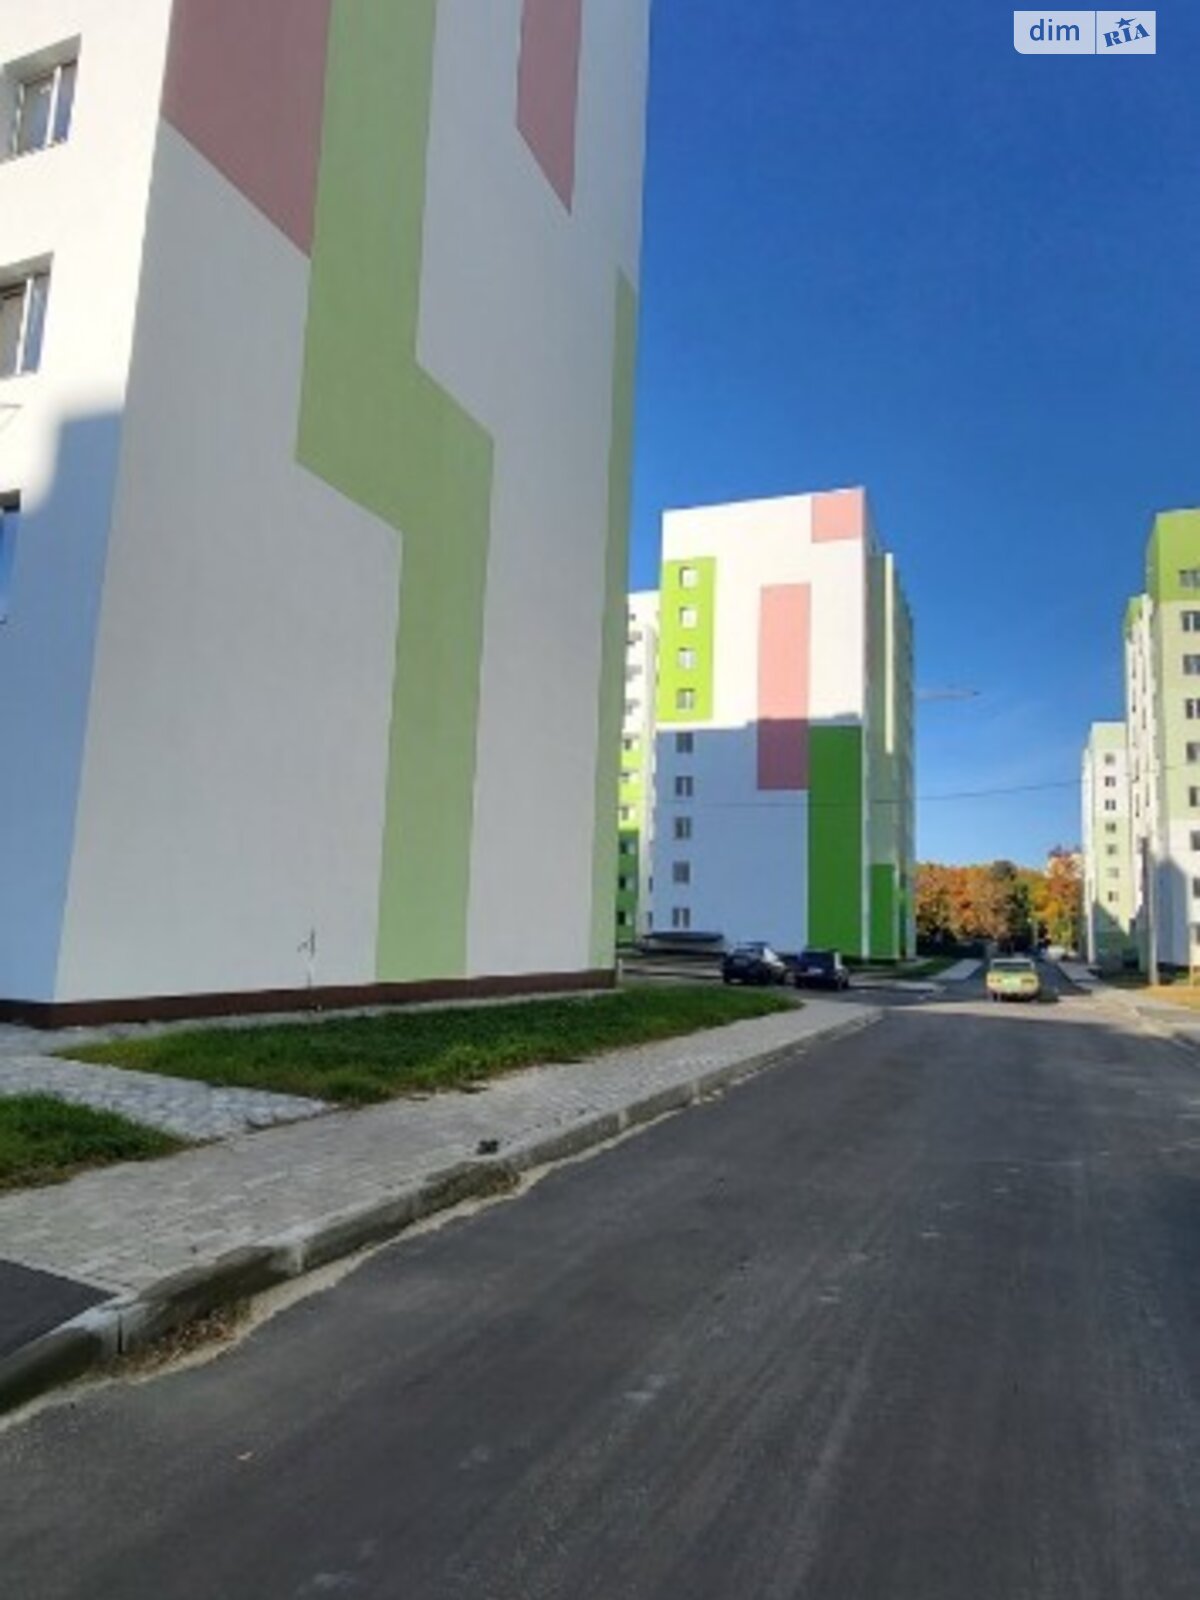 Продажа двухкомнатной квартиры в Харькове, на ул. Мира 3, фото 1